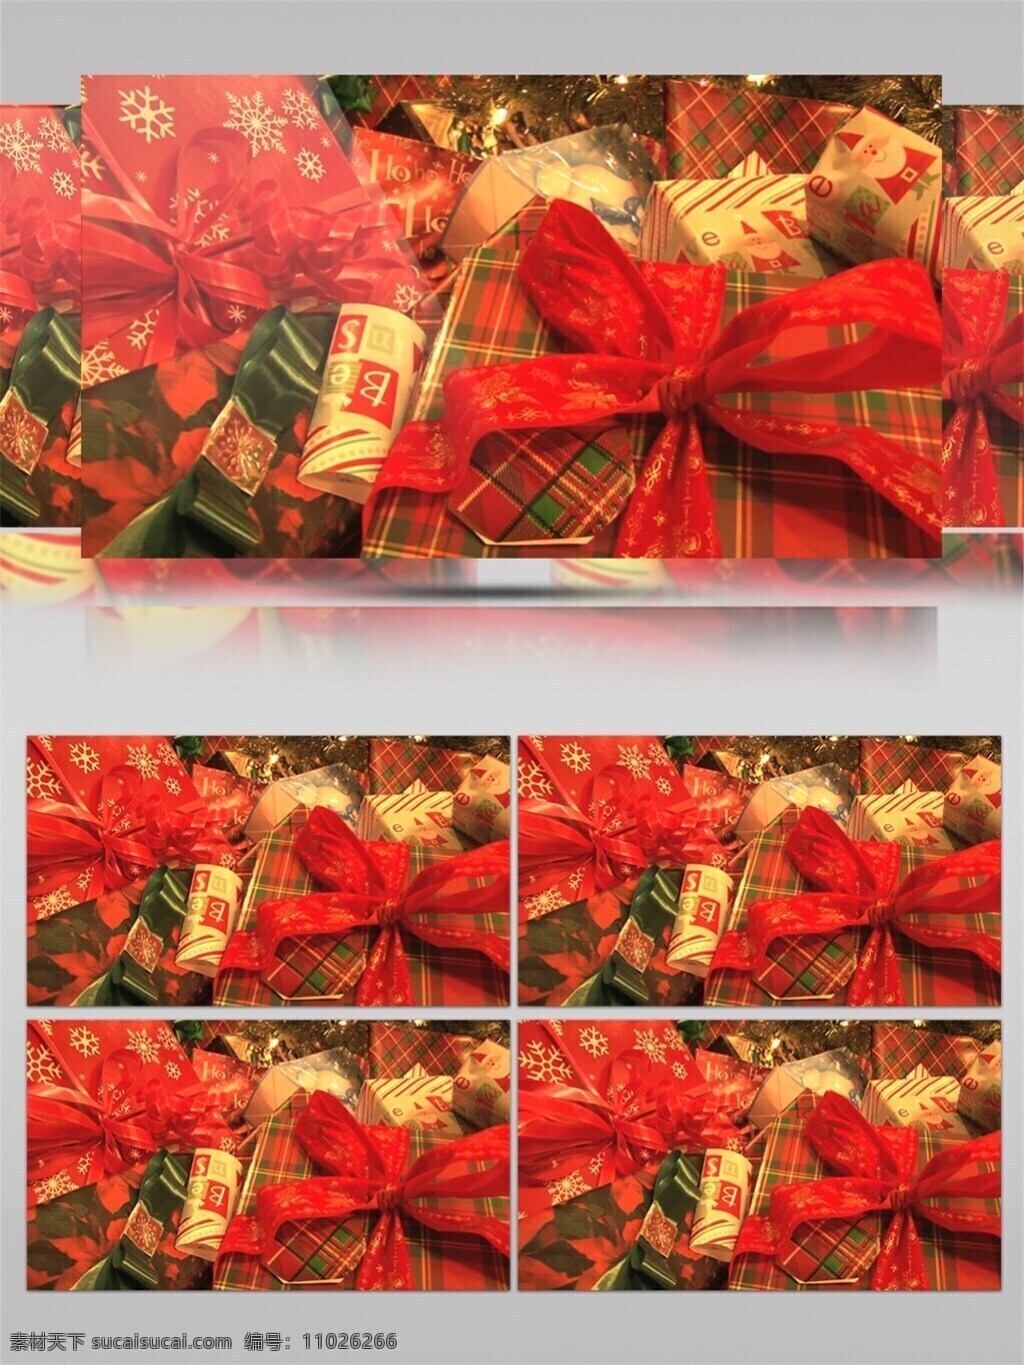 红色 礼物 圣诞节 视频 高质量 背景 红色喜庆 节日背景素材 礼物庆祝 美景动态背景